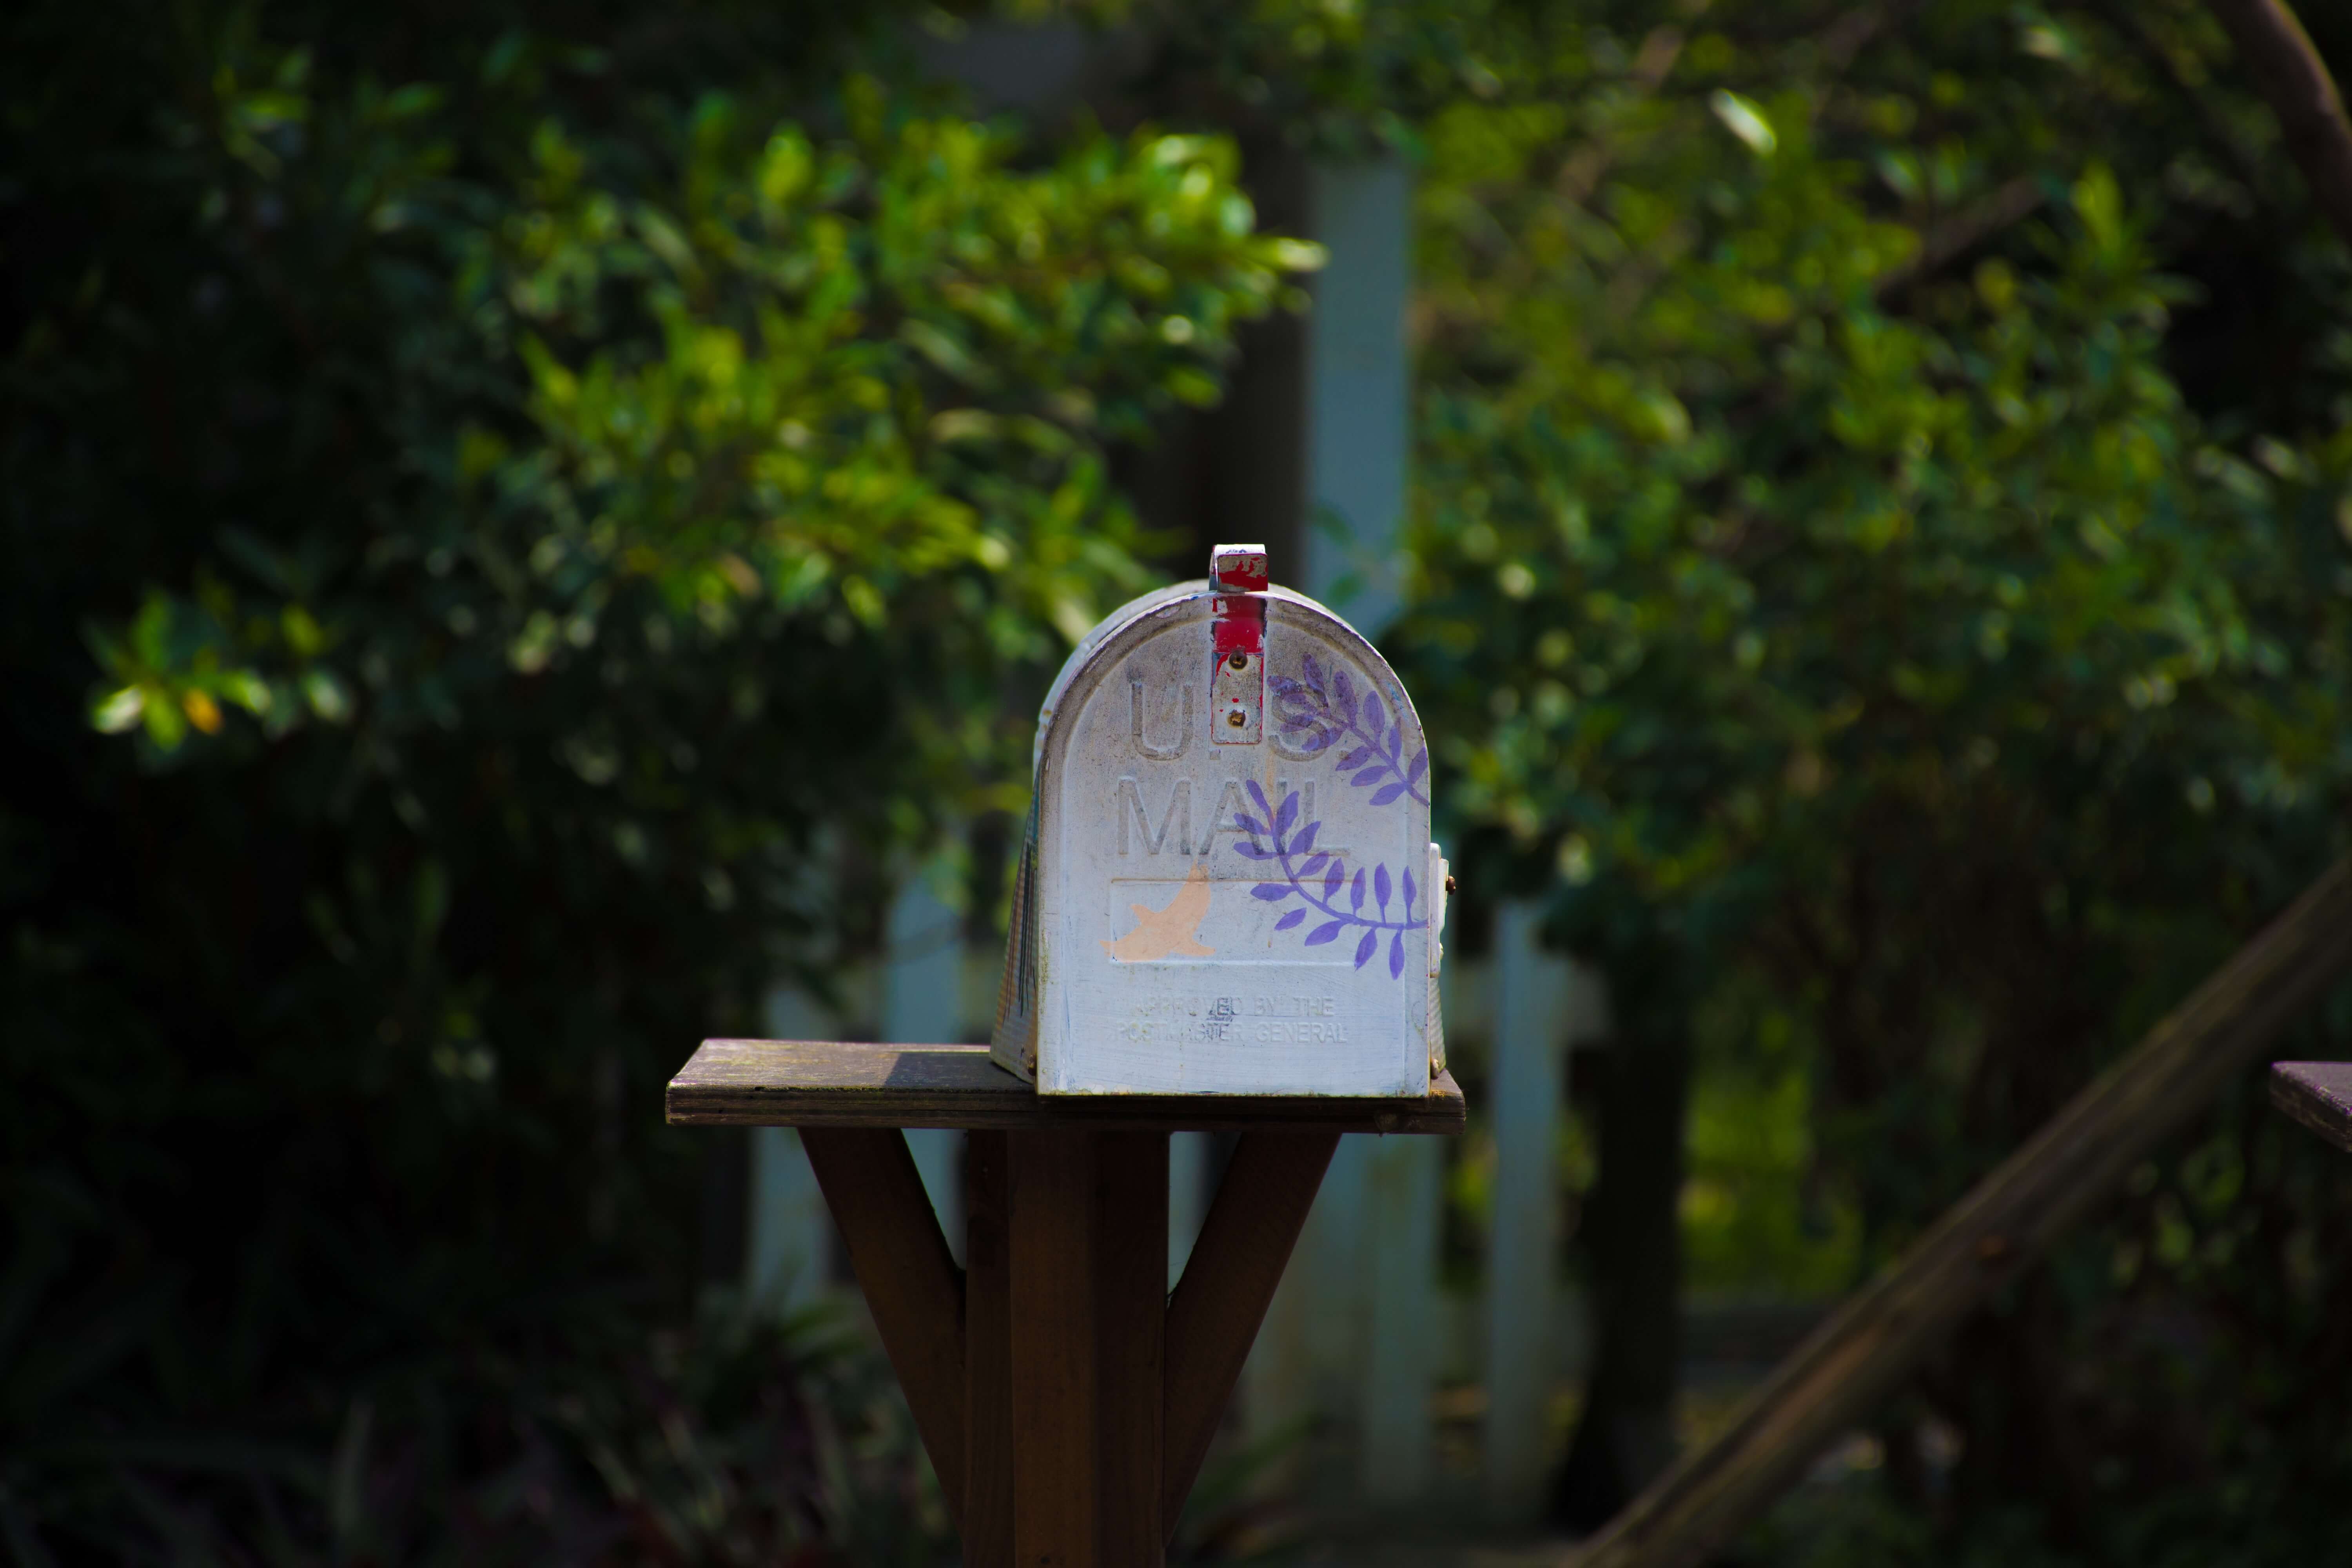 A mailbox near some bushes